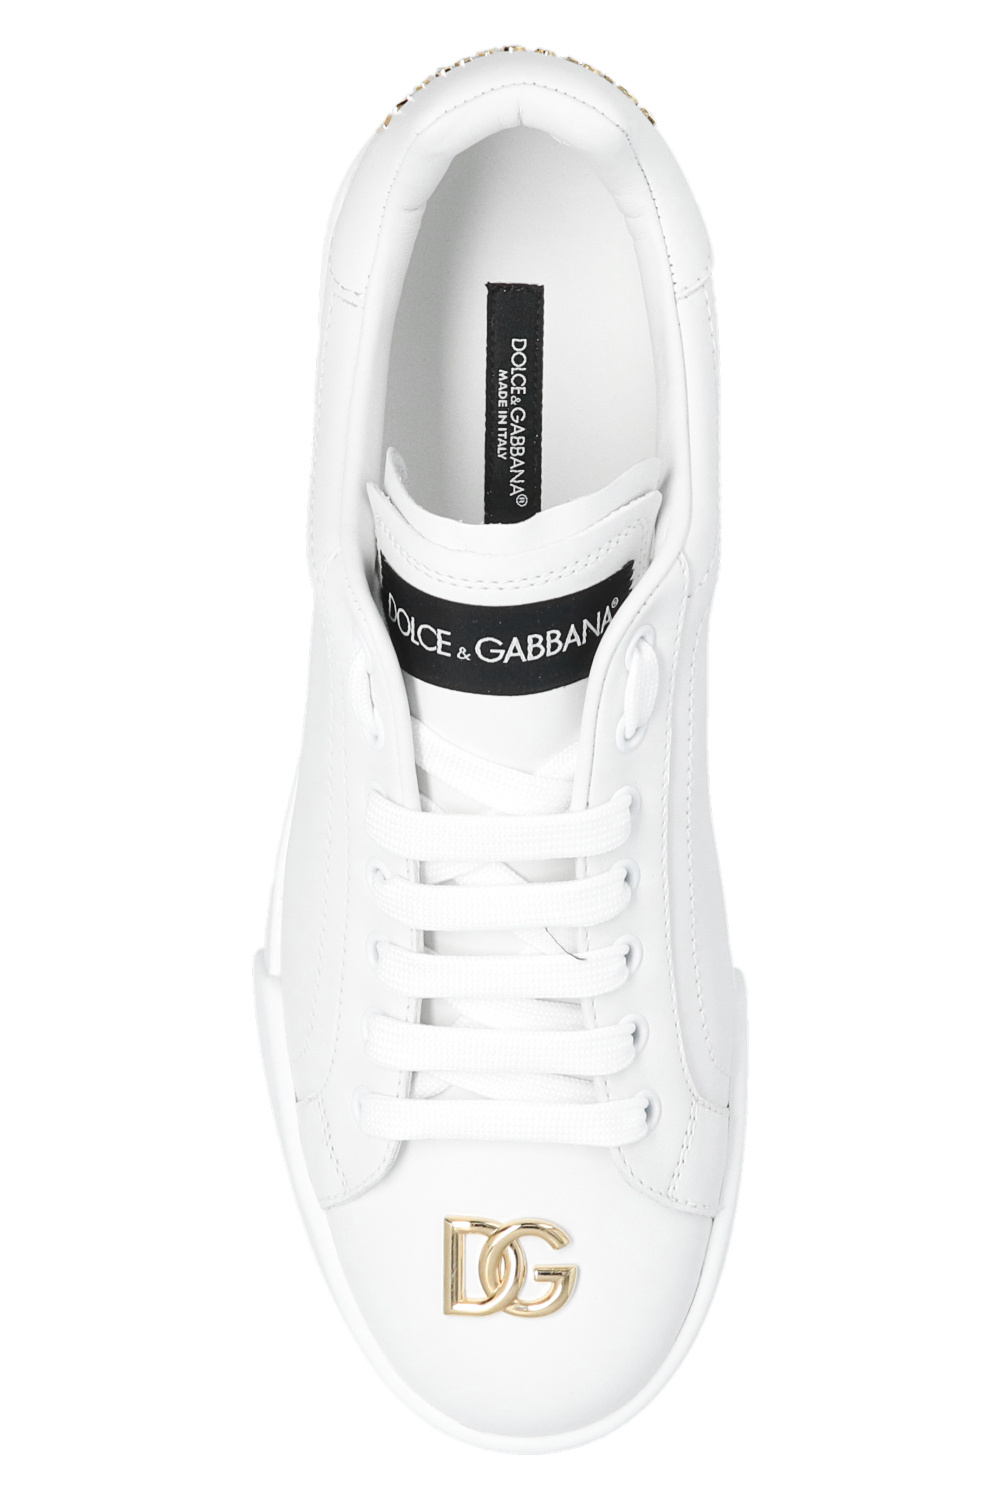 Scarpe 24-38 Dolce & Gabbana Bambina Scarpe Sneakers Sneakers con glitter - Sneaker portofino custom 2.0 in paillettes female 29 